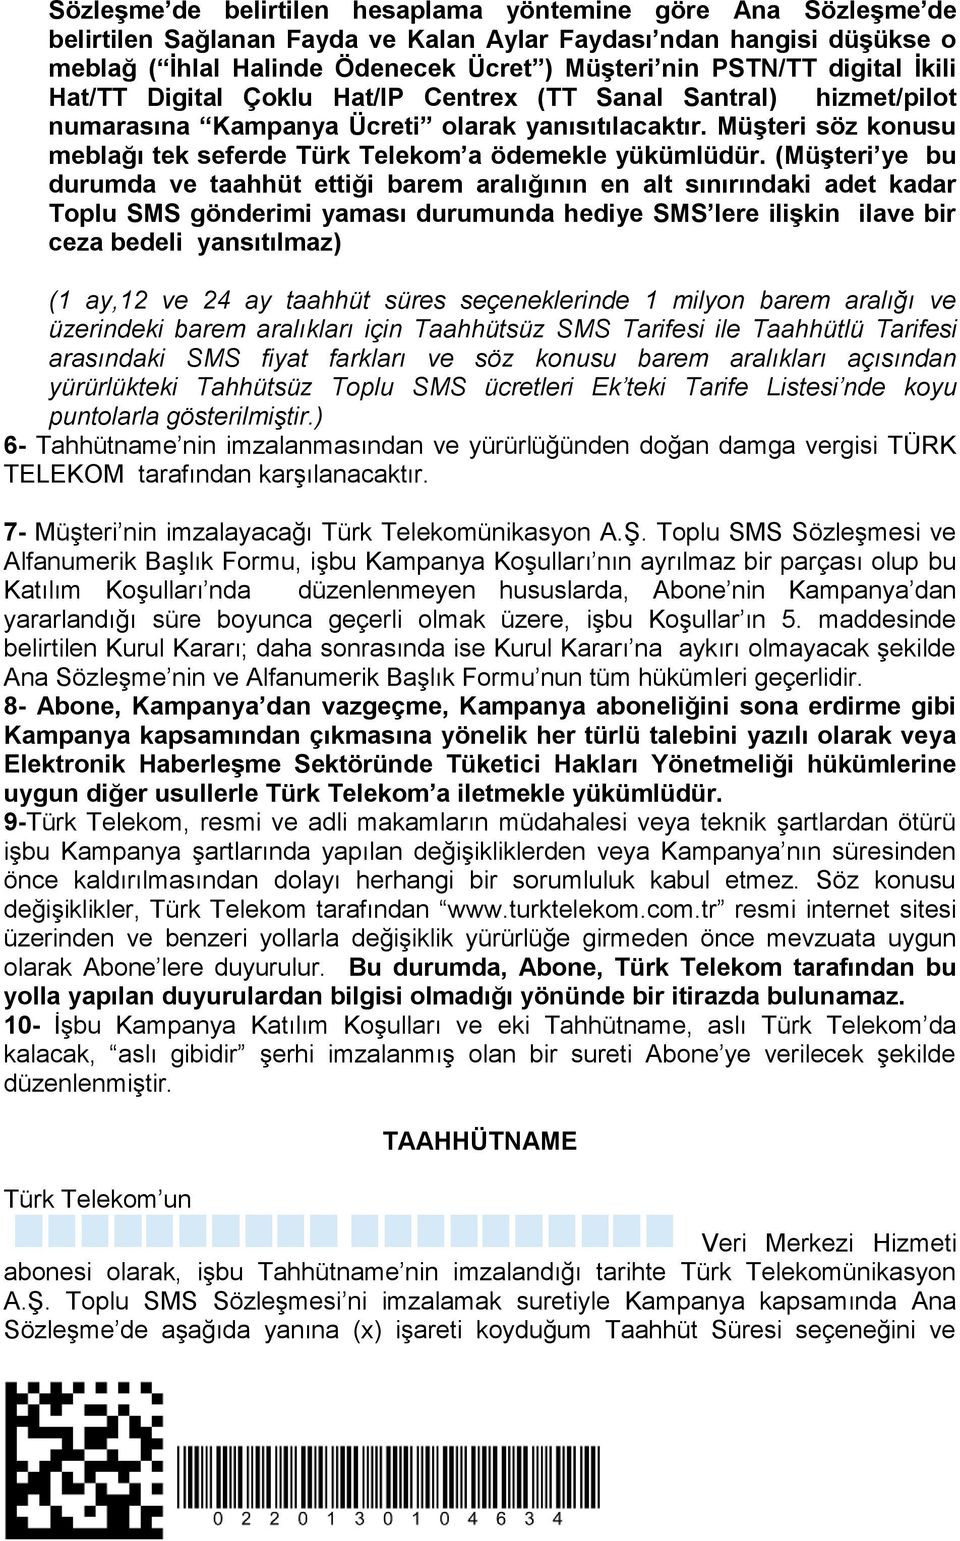 Müşteri söz konusu meblağı tek seferde Türk Telekom a ödemekle yükümlüdür.